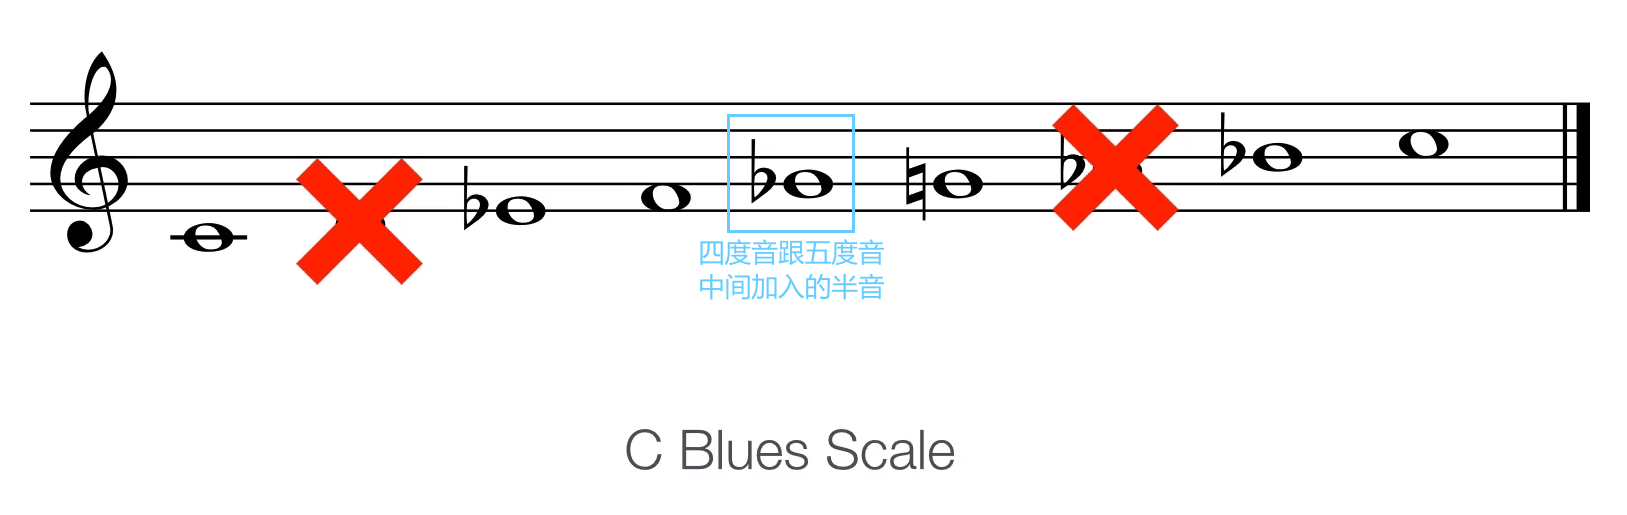 C 蓝调音阶